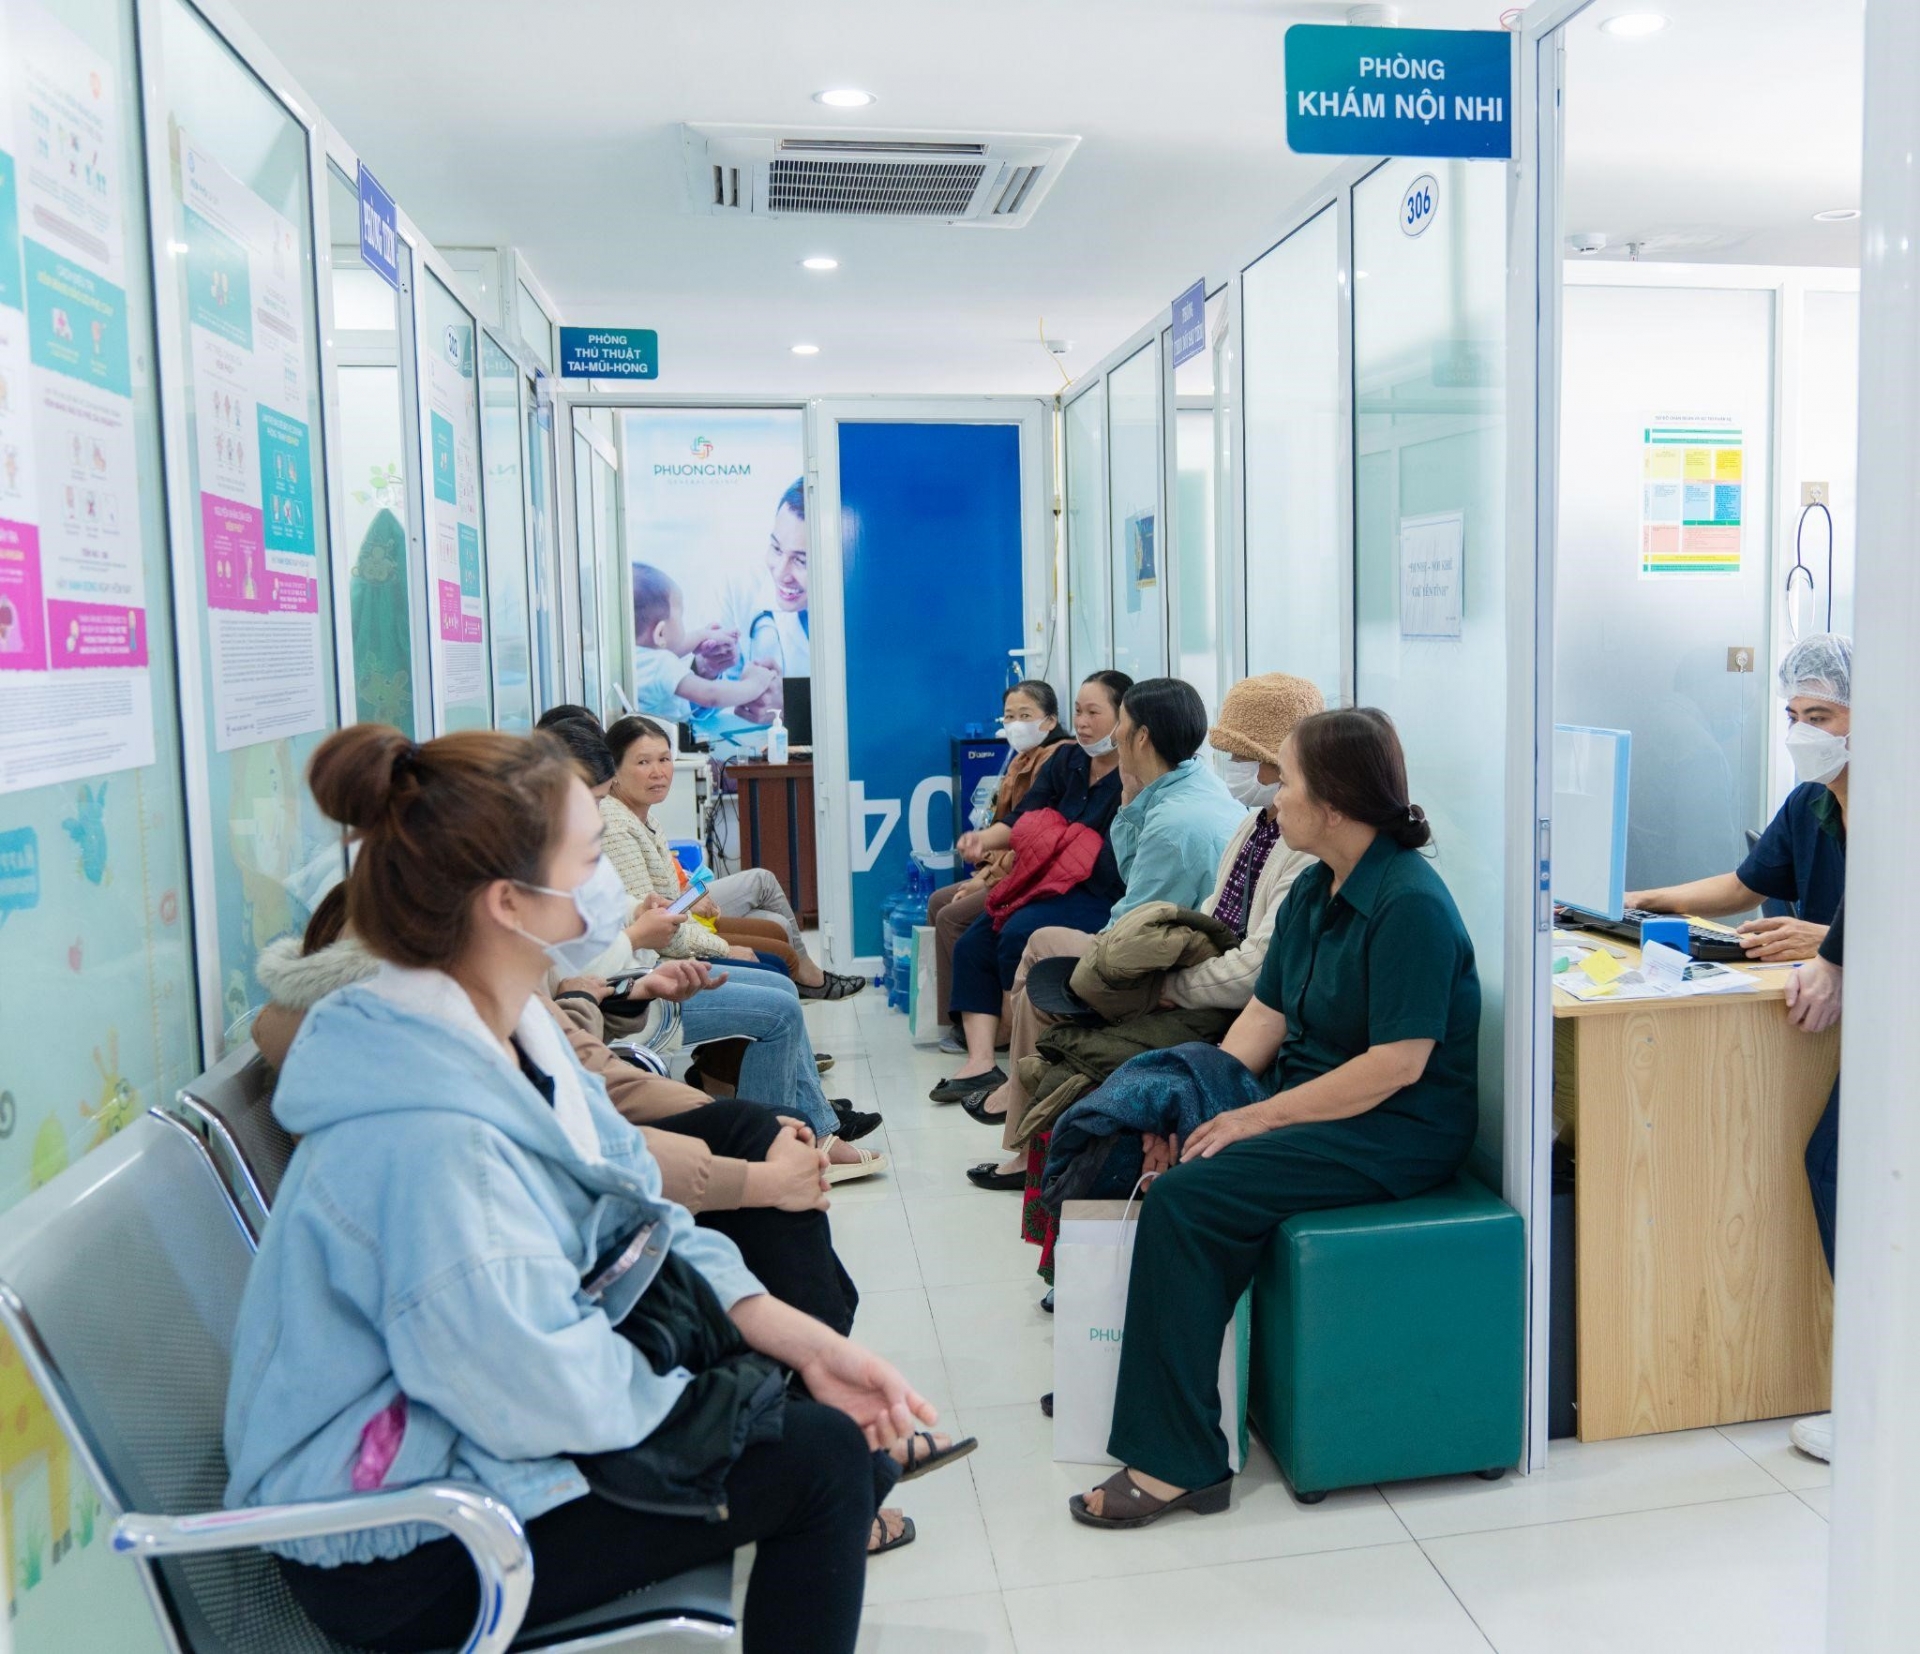 Phòng khám Đa khoa Phương Nam được đông đảo bệnh nhân tin chọn và đánh giá cao